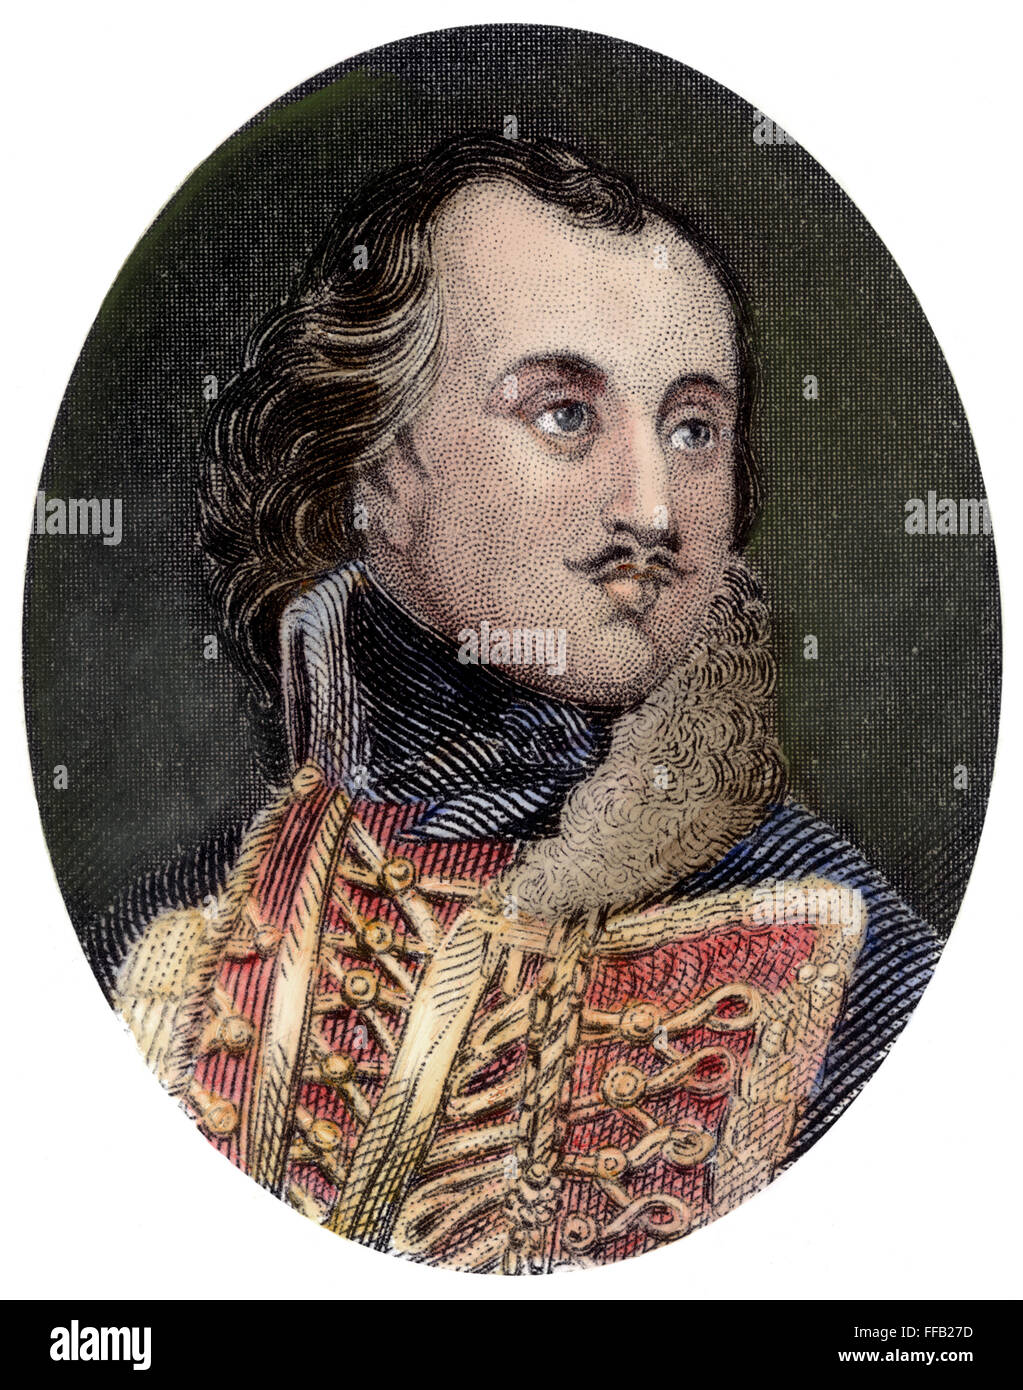 CASIMIR PULASKI (1747-1779). /NPolish soldato in guerra rivoluzionaria americana. Incisione colorata, xix secolo. Foto Stock